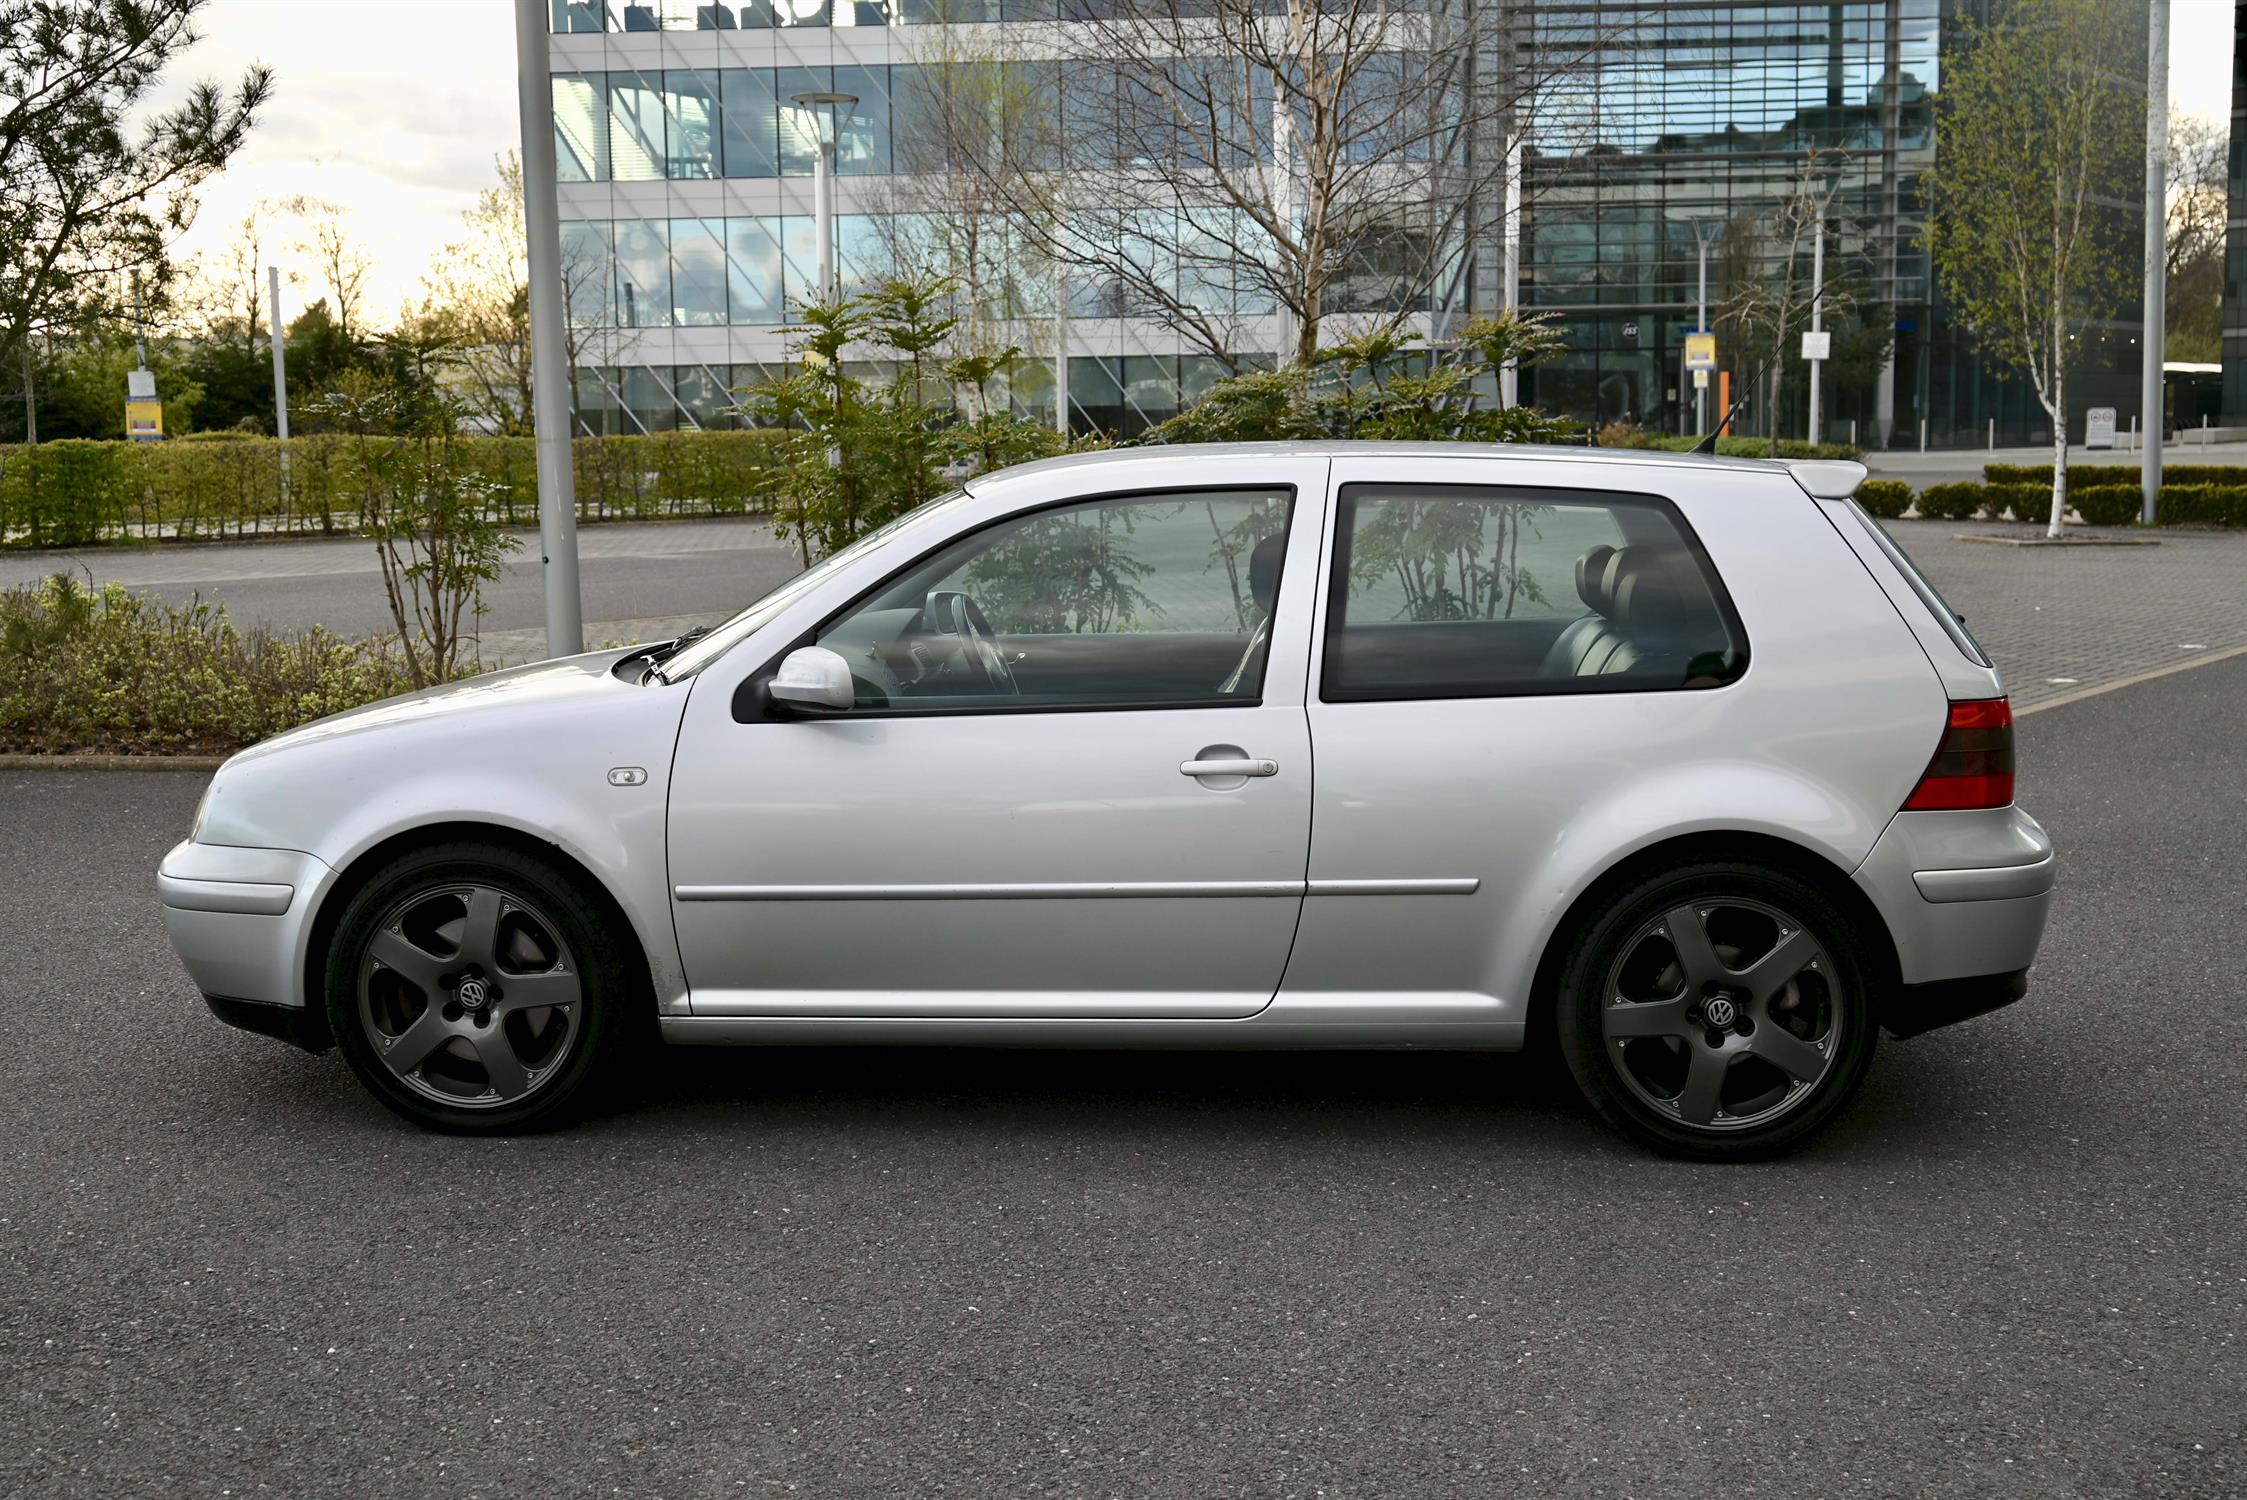 2001 (Mk 4) VW Golf V6 4MOTION 3-door hatchback Silver coachwork with black leather upholstery. - Image 5 of 13